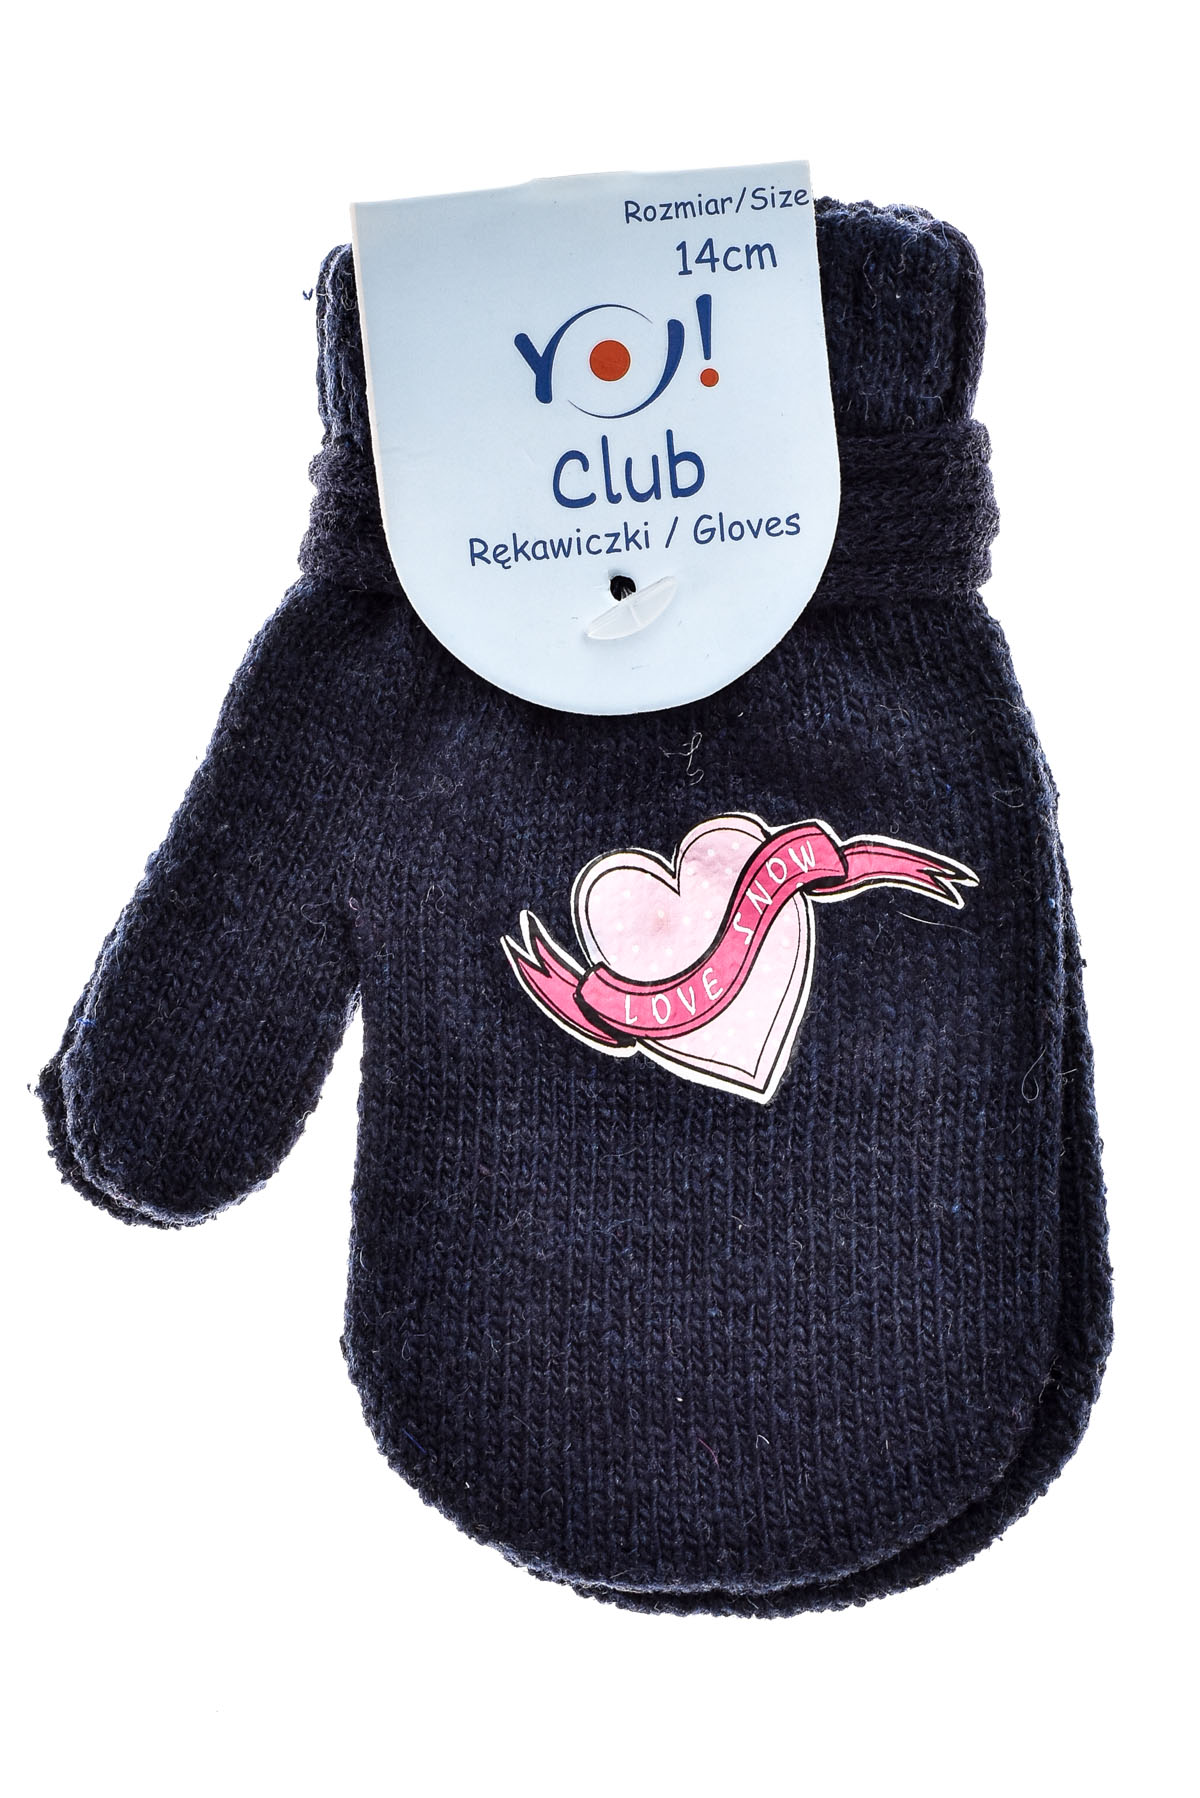 Rękawiczki dla dziewczynki - Yo! club - 0